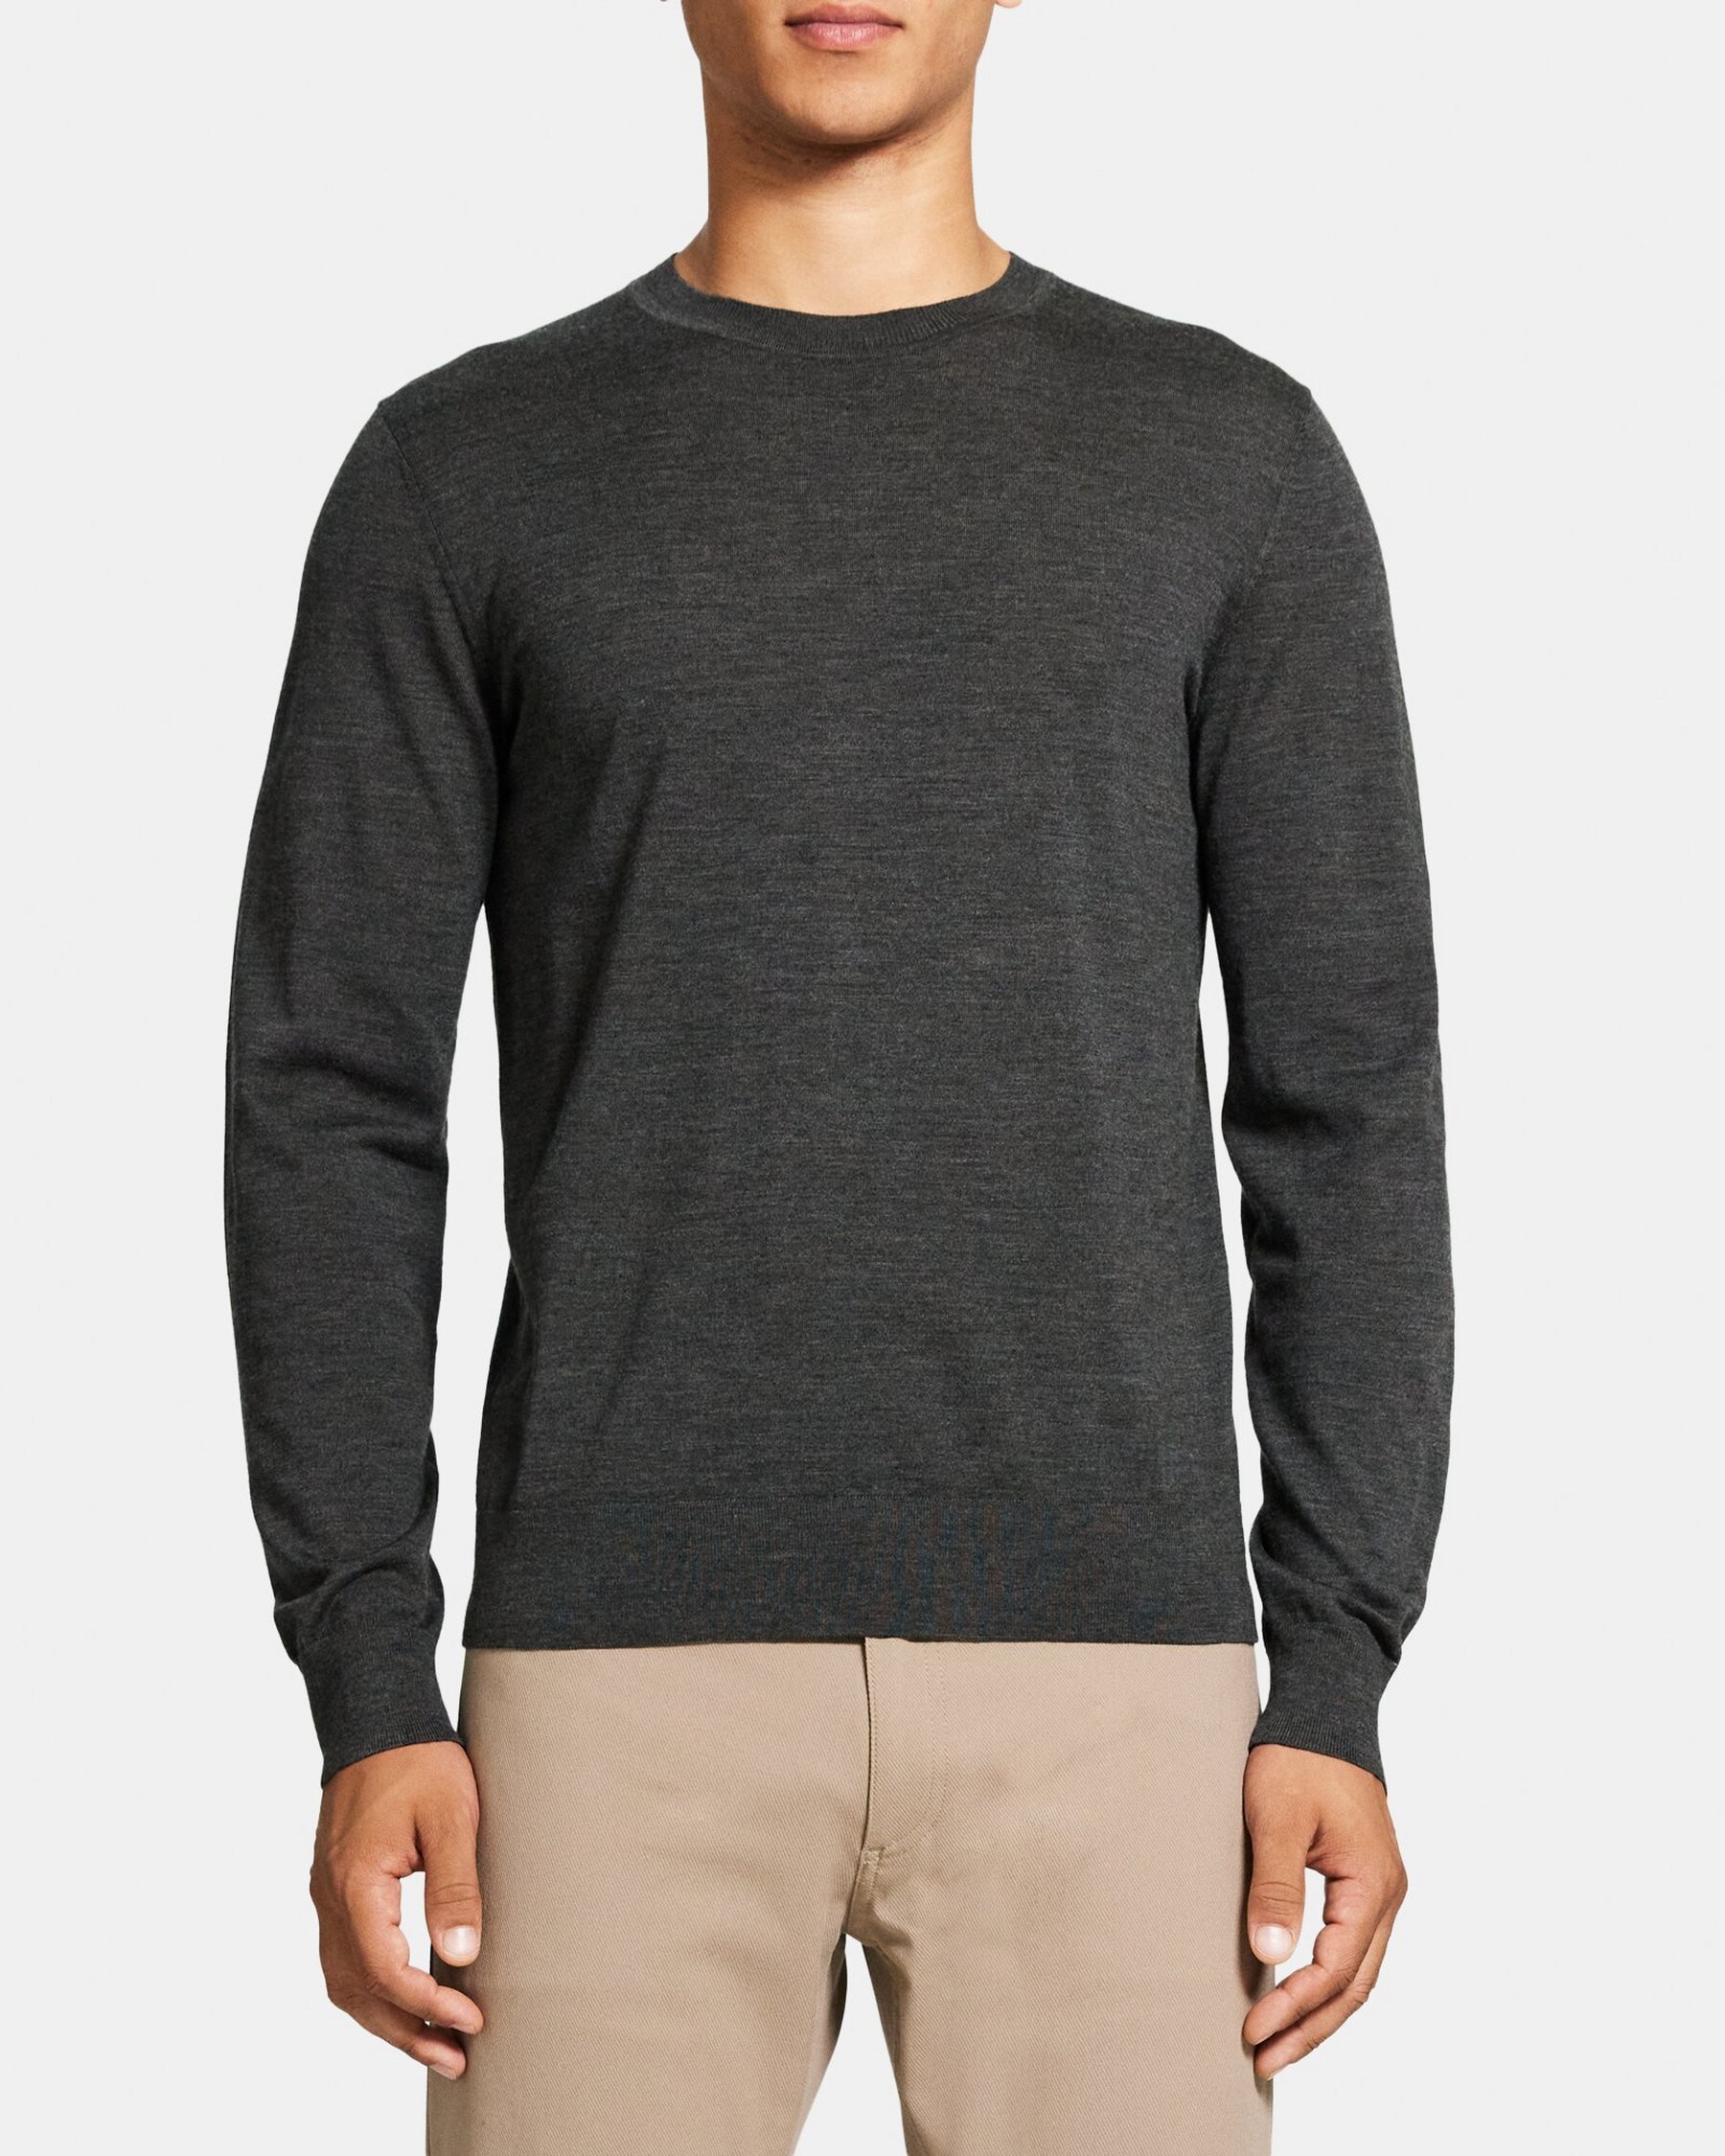 띠어리 Theory Crewneck Sweater in Merino Wool,OLIVE MELANGE